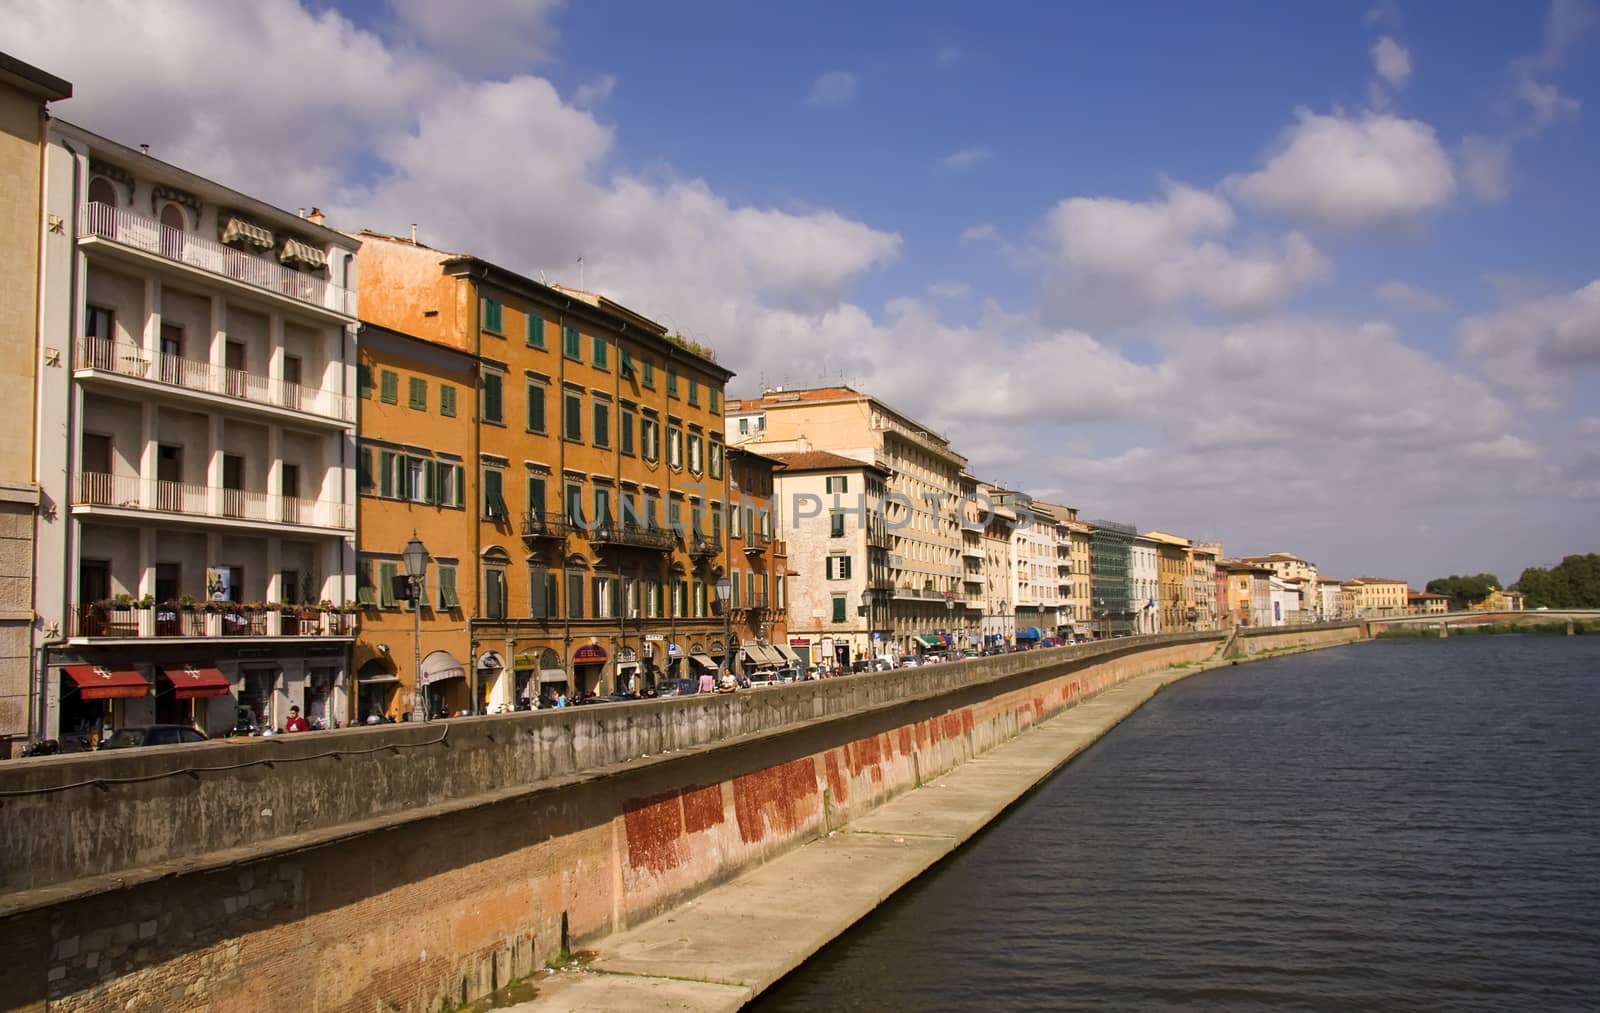 Pisa town by fotoecho